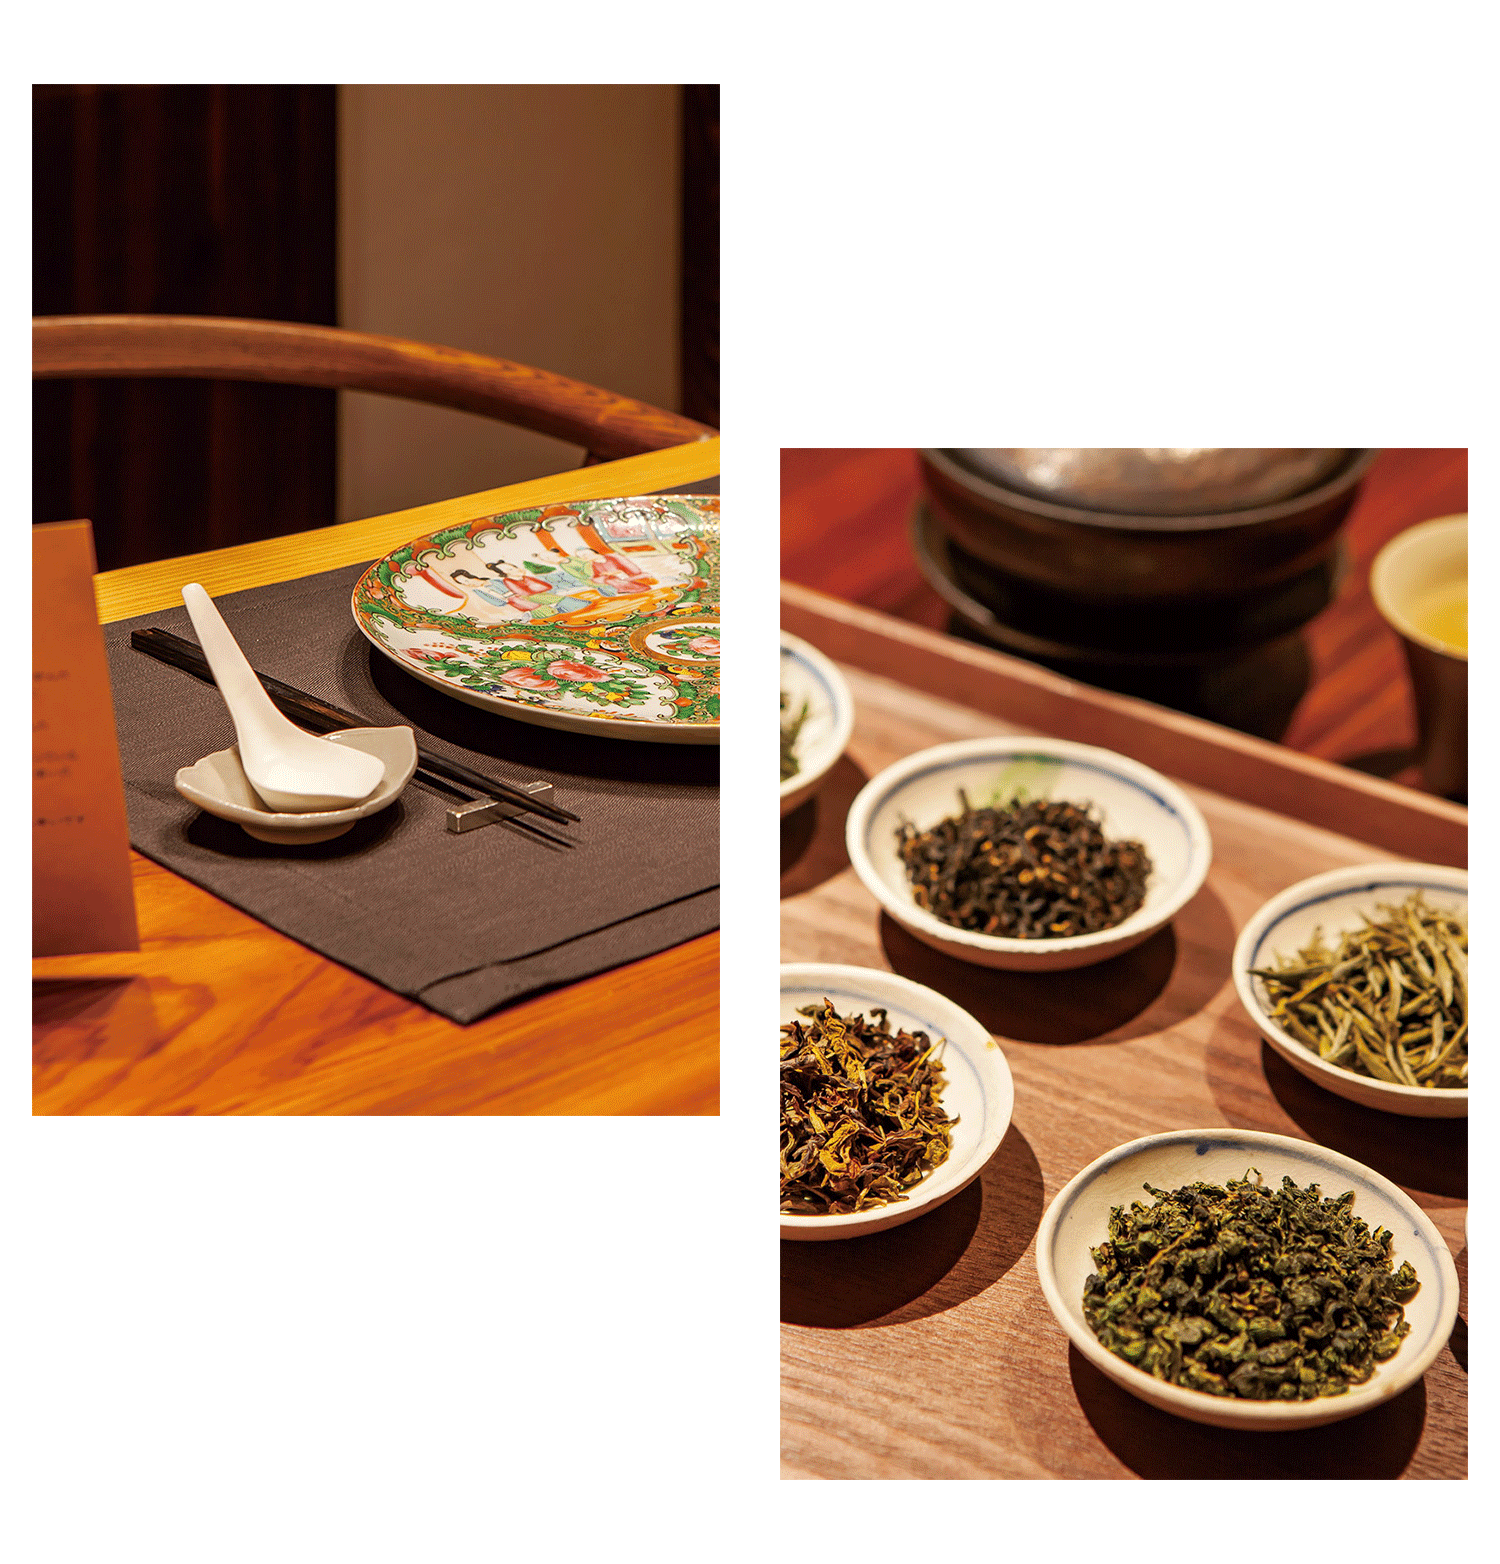 東京港区白金台にある篠原裕幸がオーナーシェフを務める中国料理ShinoiS(シノワ)のコースとシェフが厳選した中国茶のペアリング